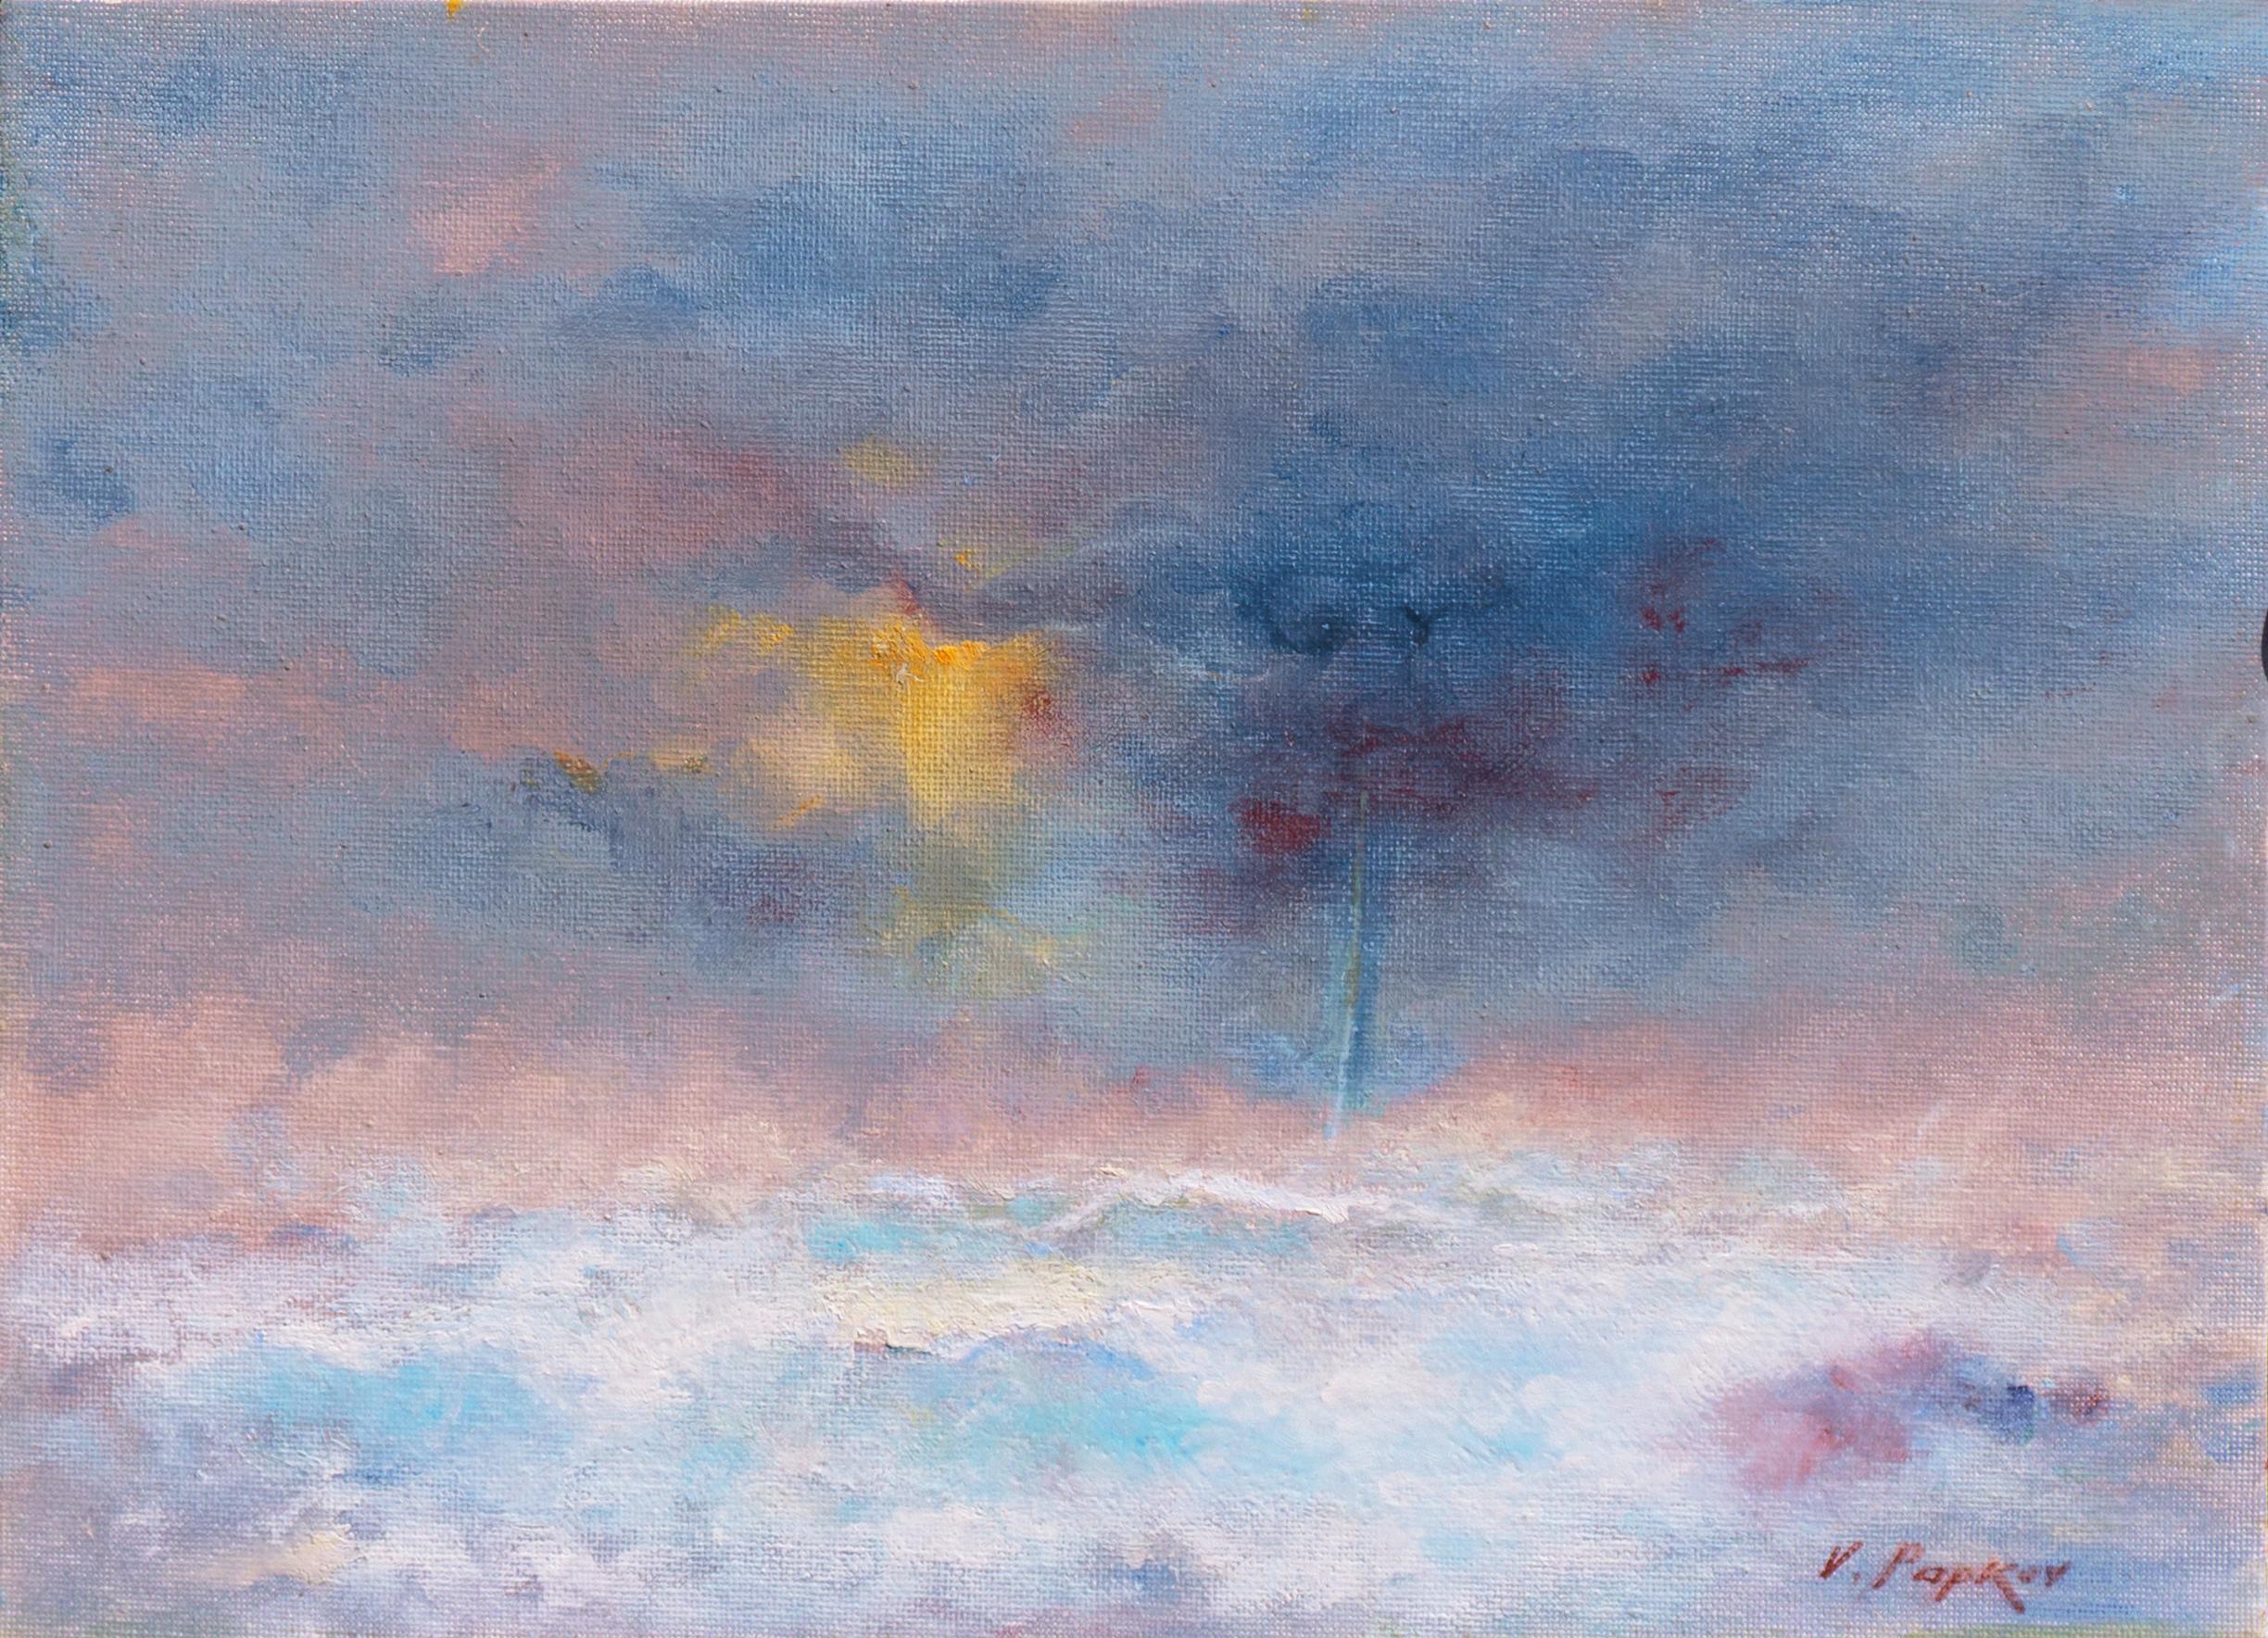 Landscape Painting Victor Papkov - San Francisco Sunset", paysage marin impressionniste, Russe-américain, région de la baie de San Francisco